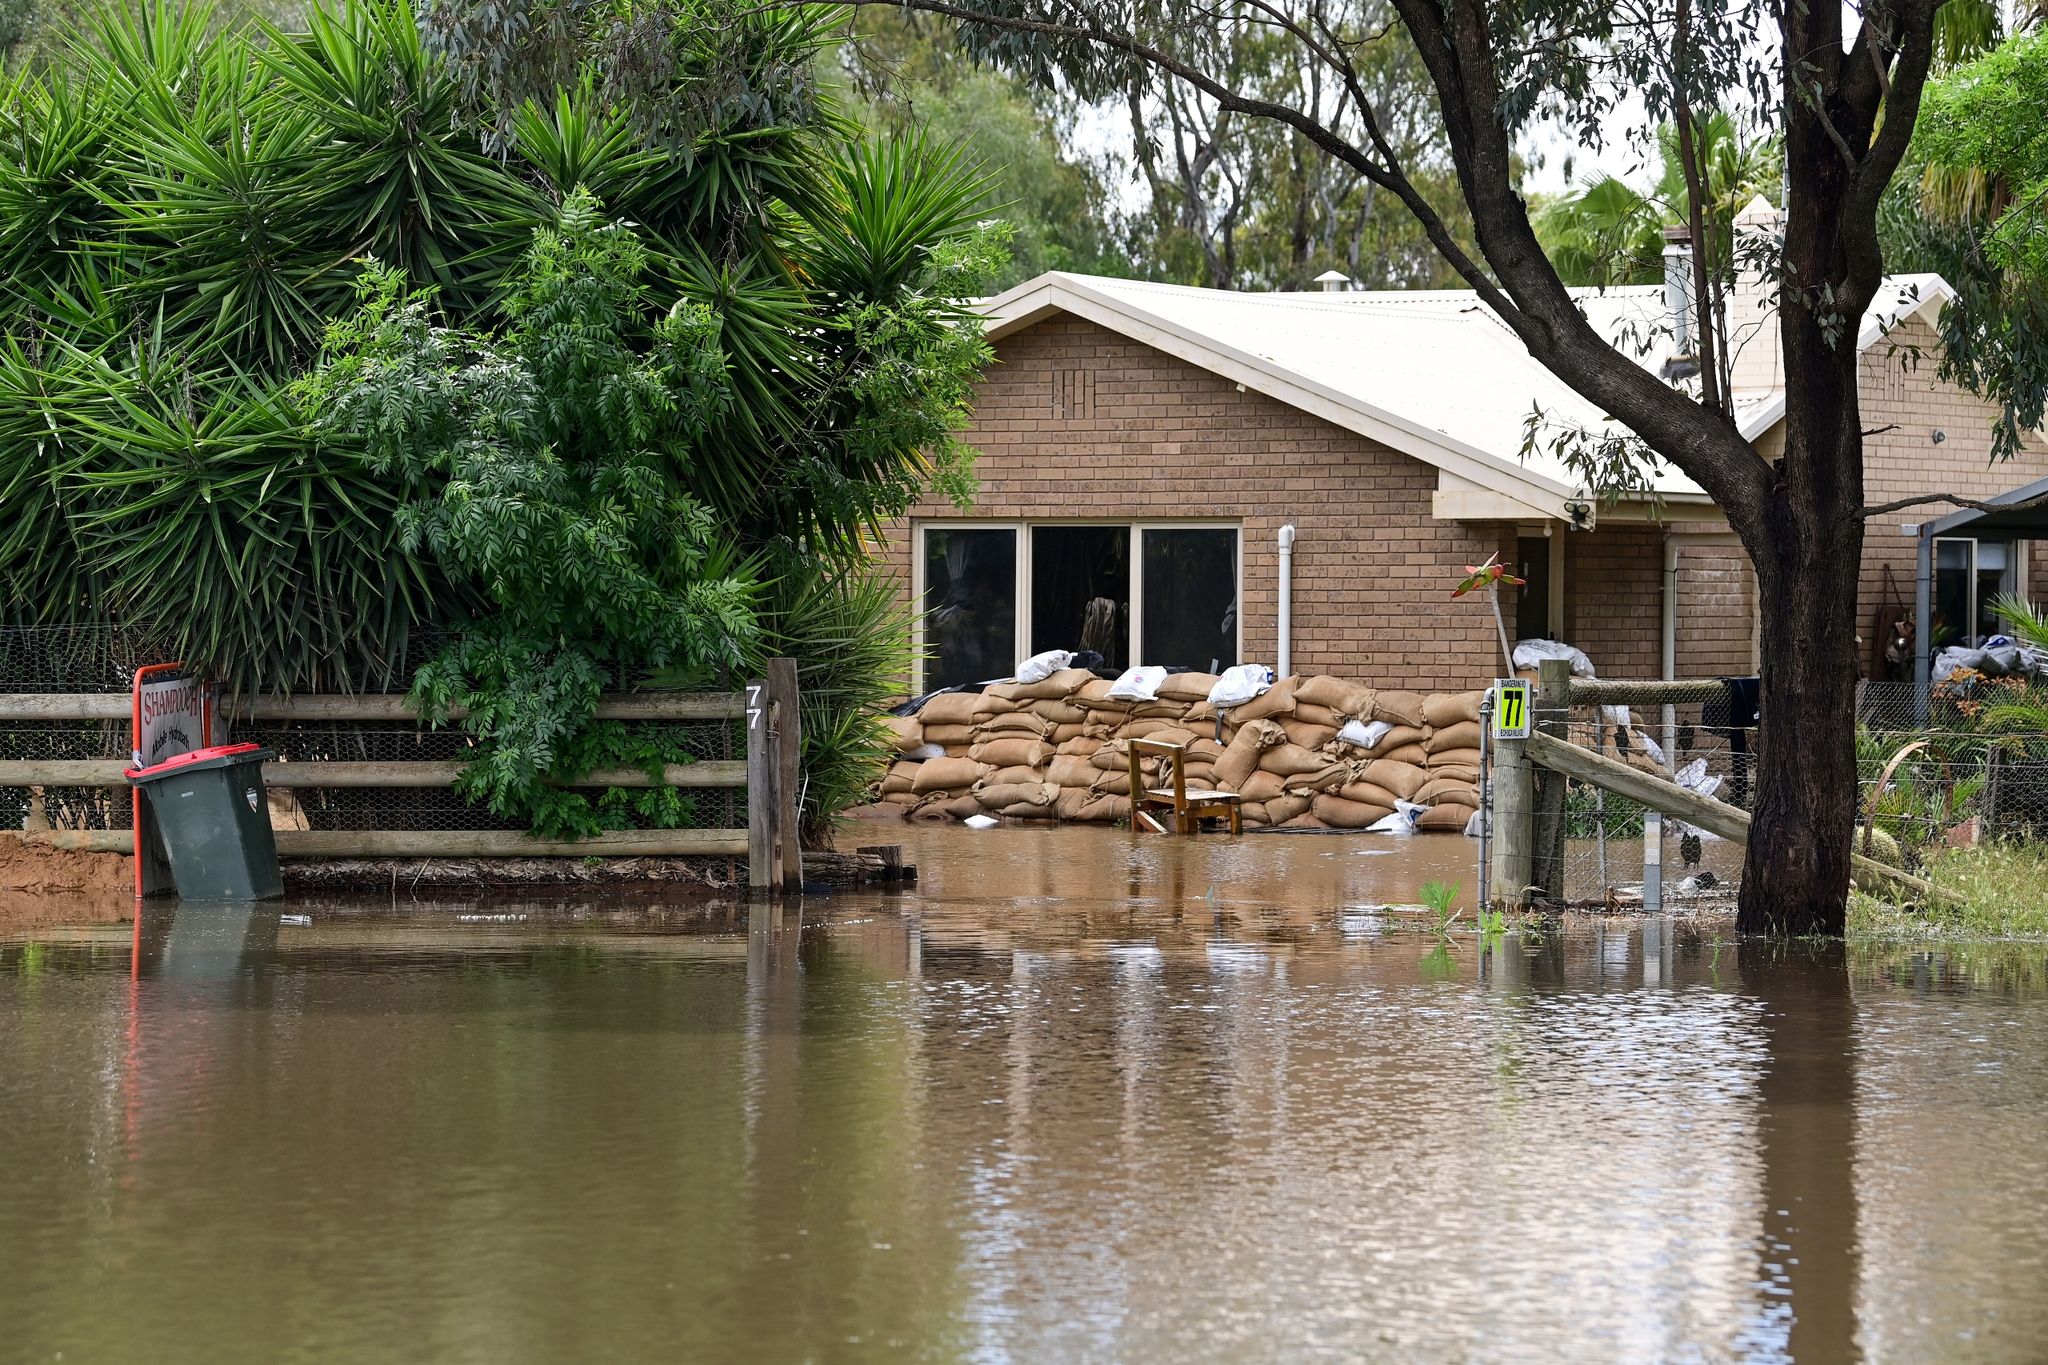 Australien kämpft mit heftigen Regenfällen und Überschwemmungen, wie hier in Echuca.